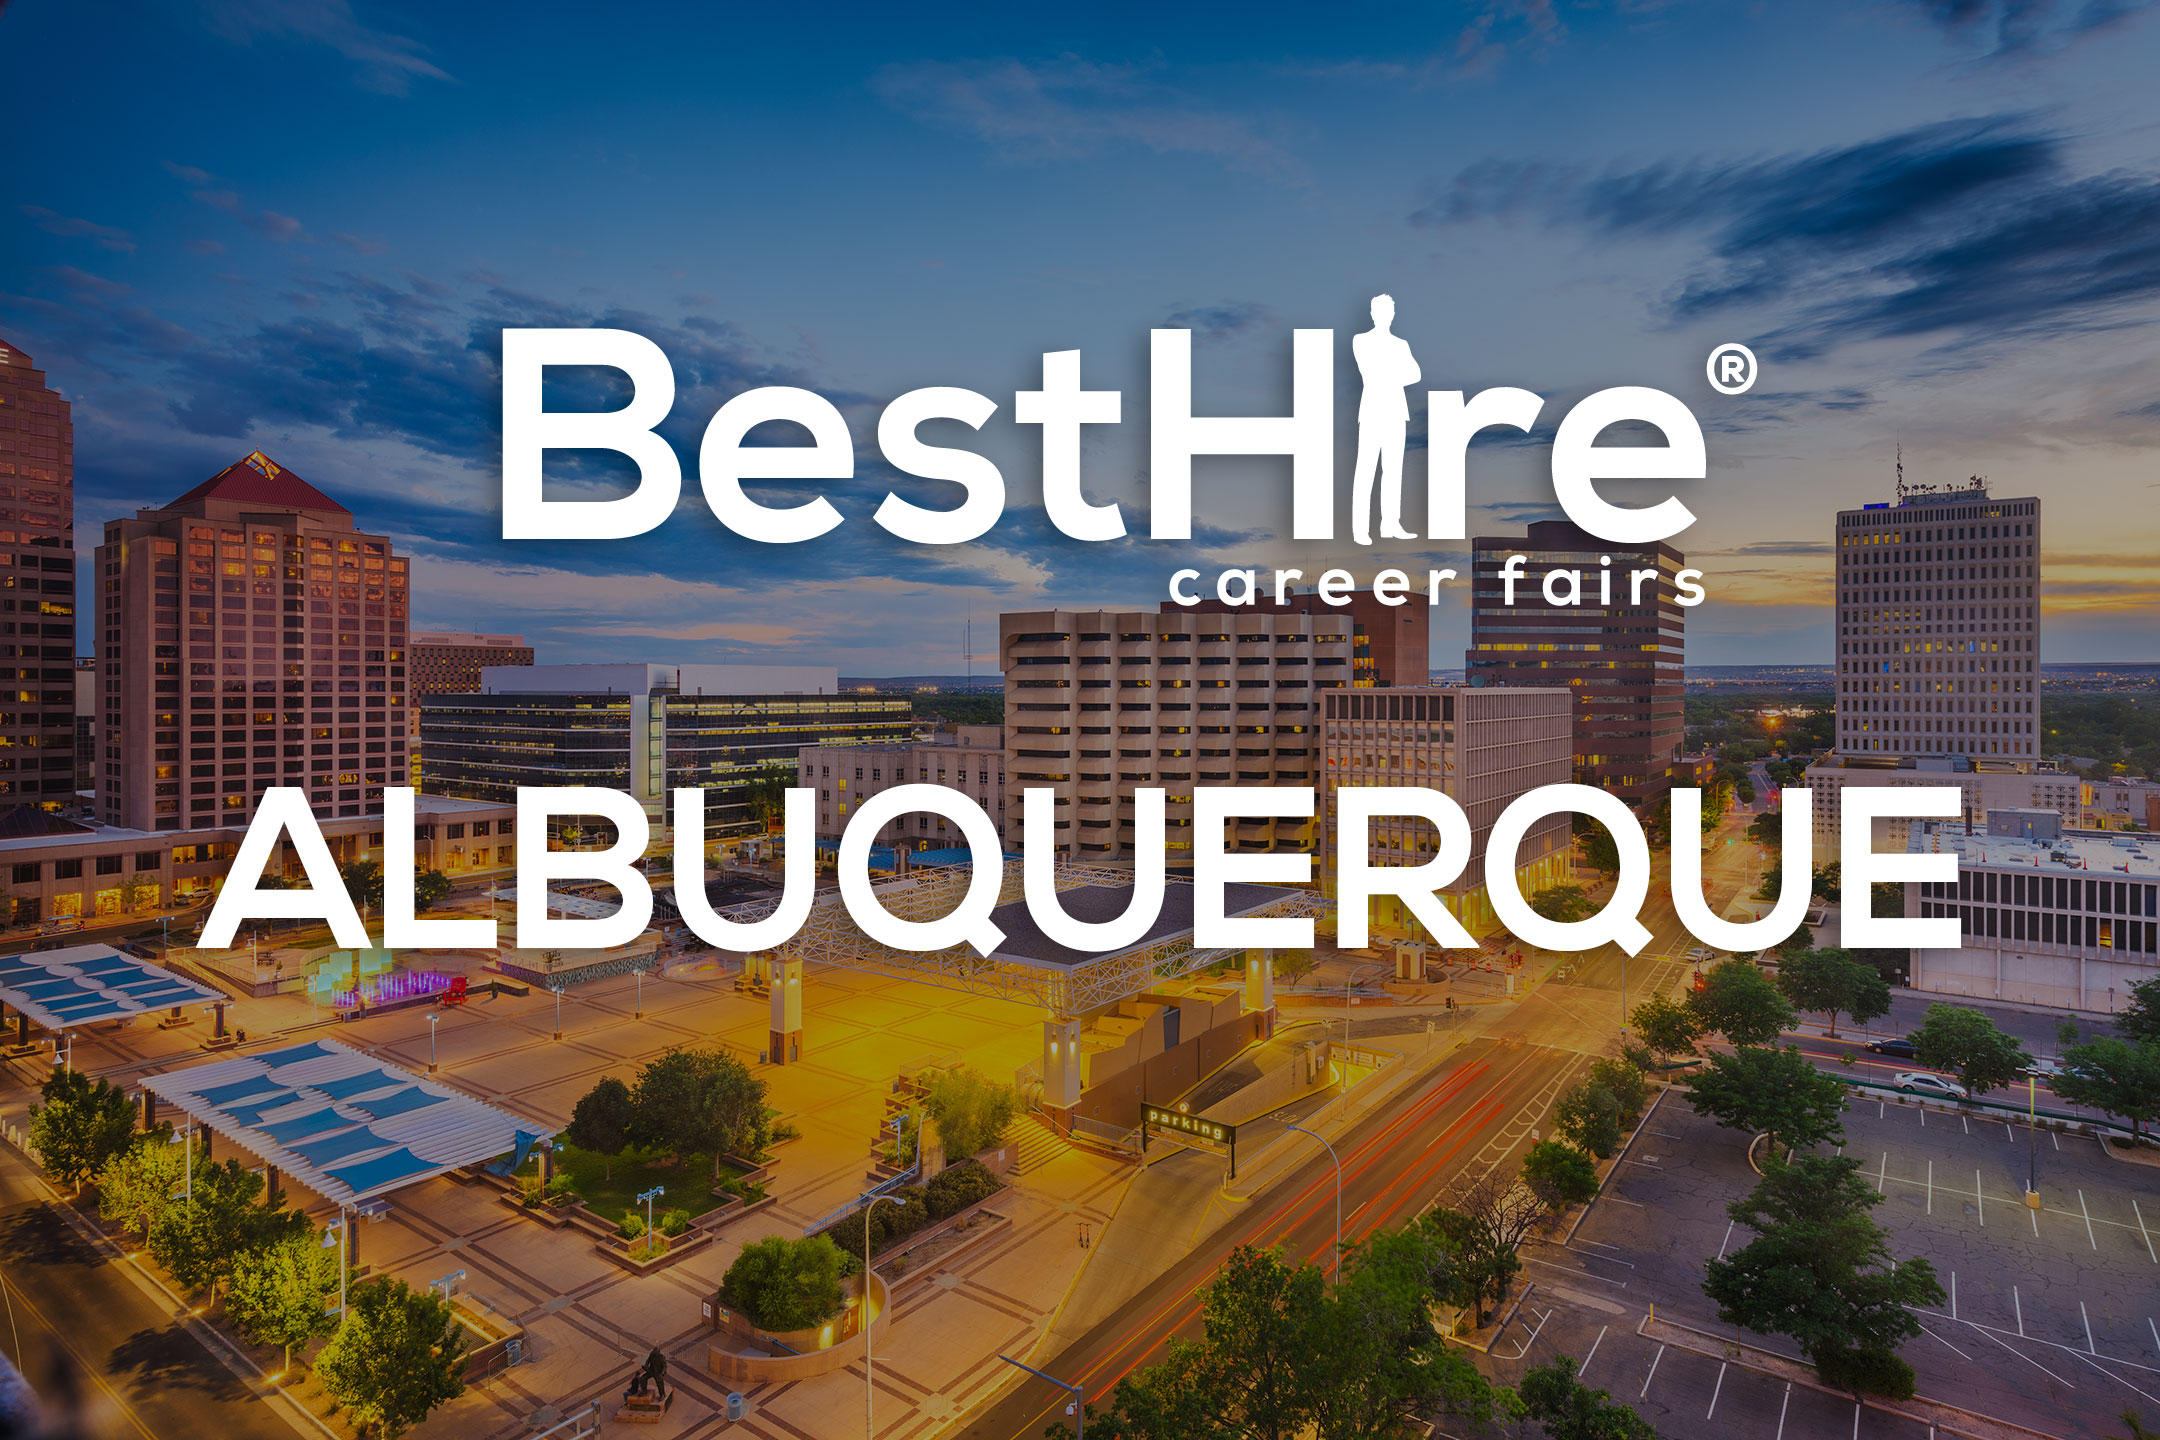 Albuquerque job fairs